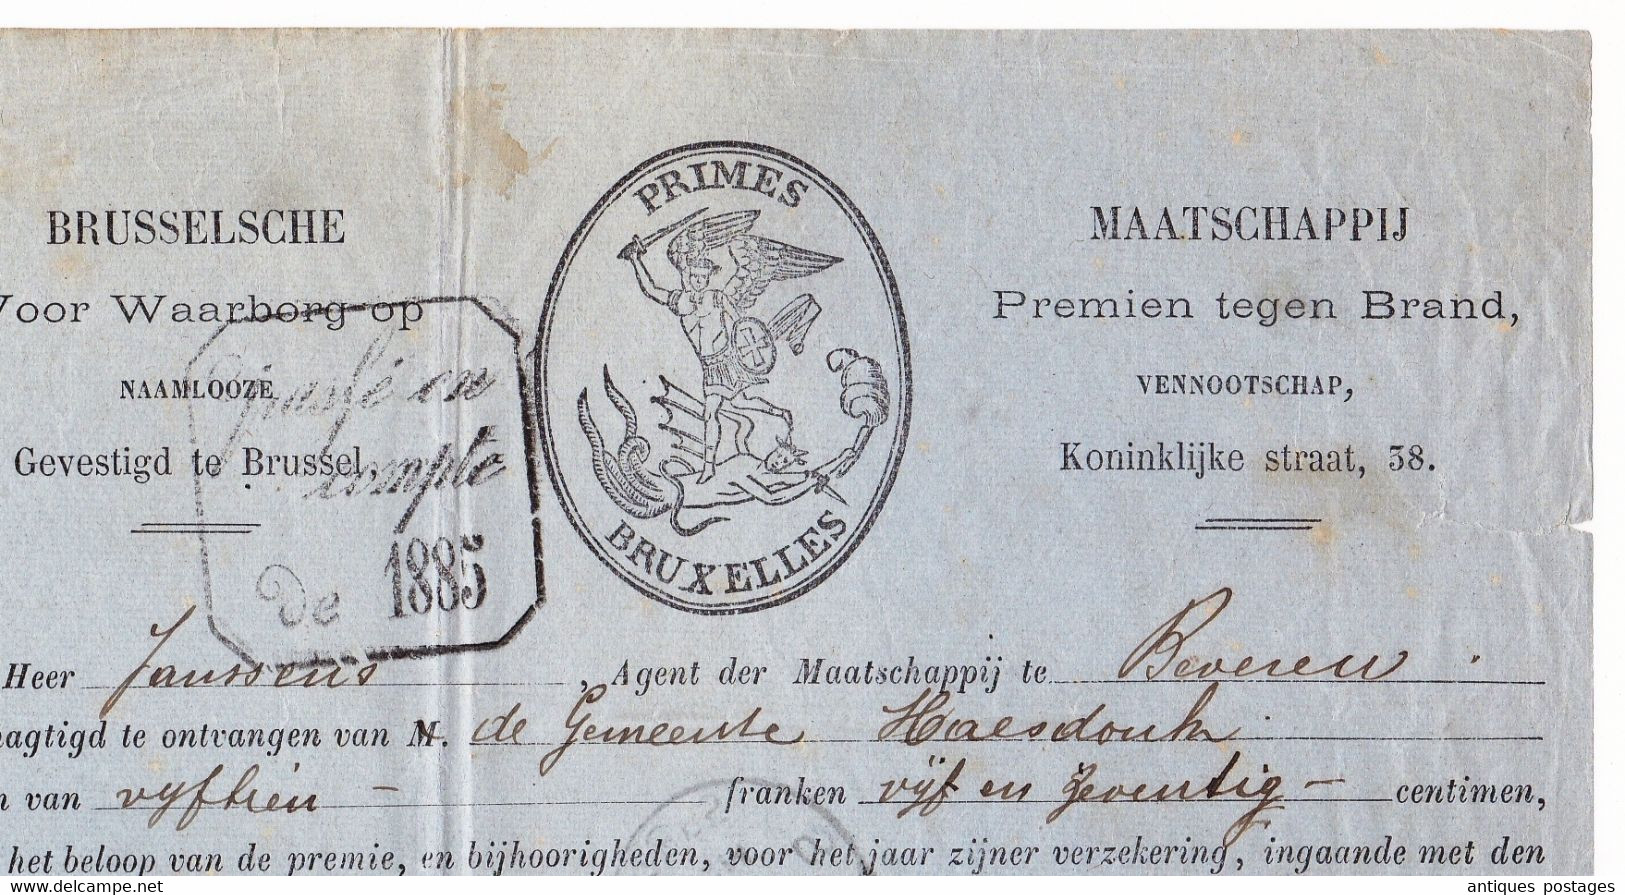 Belgique 1885 Primes Bruxelles Saint-Nicolas Beveren Maatschappij Premien Tegen Brand - 1883 Léopold II